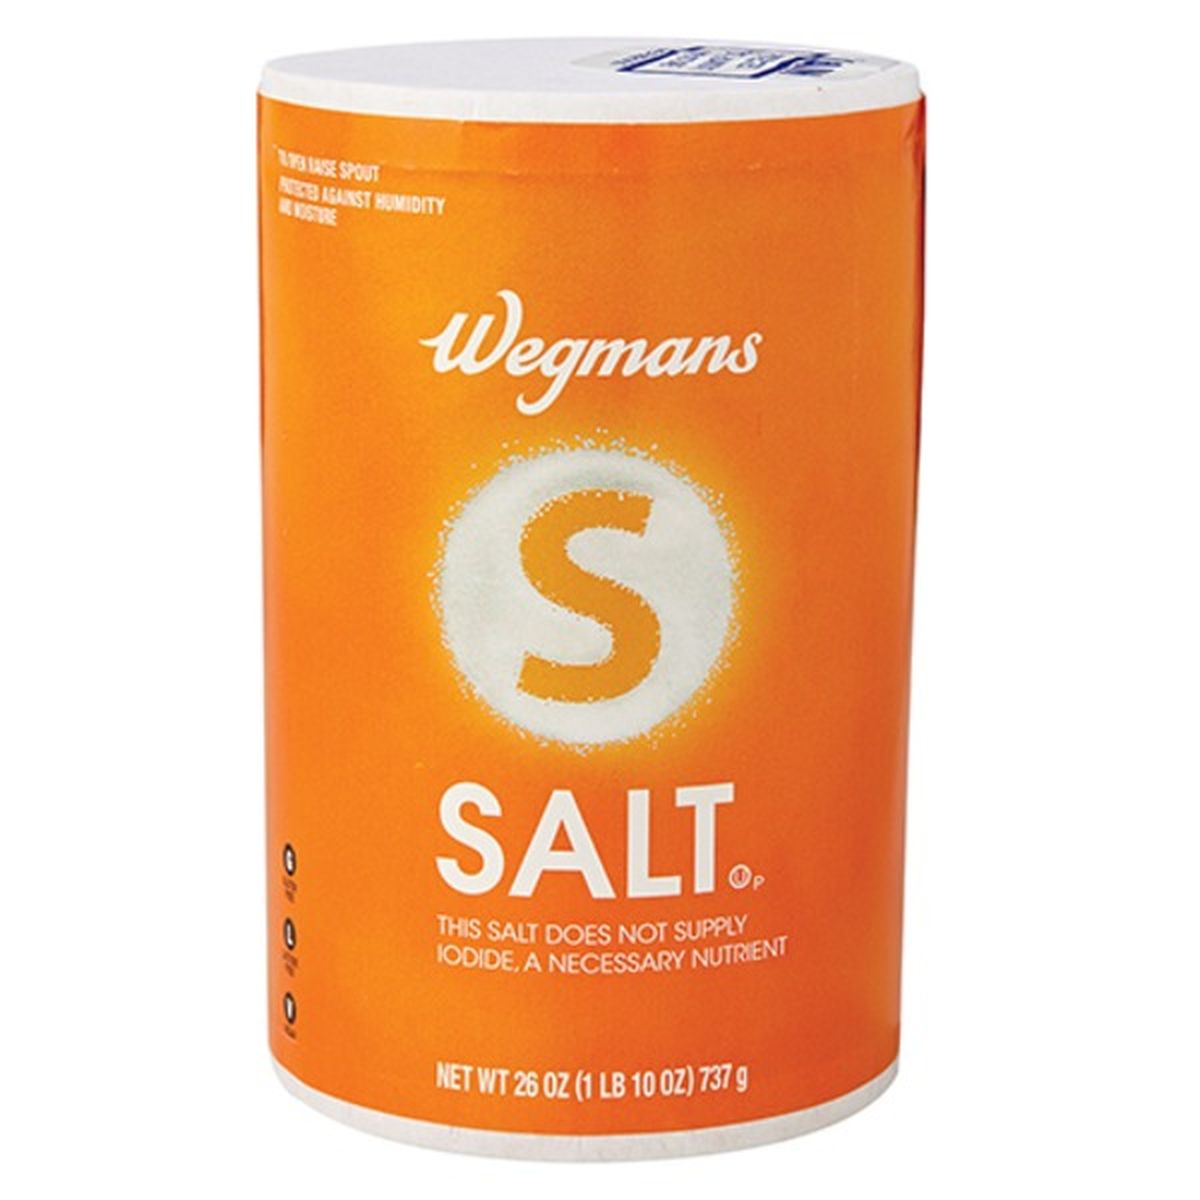 Calories in Wegmans Salt